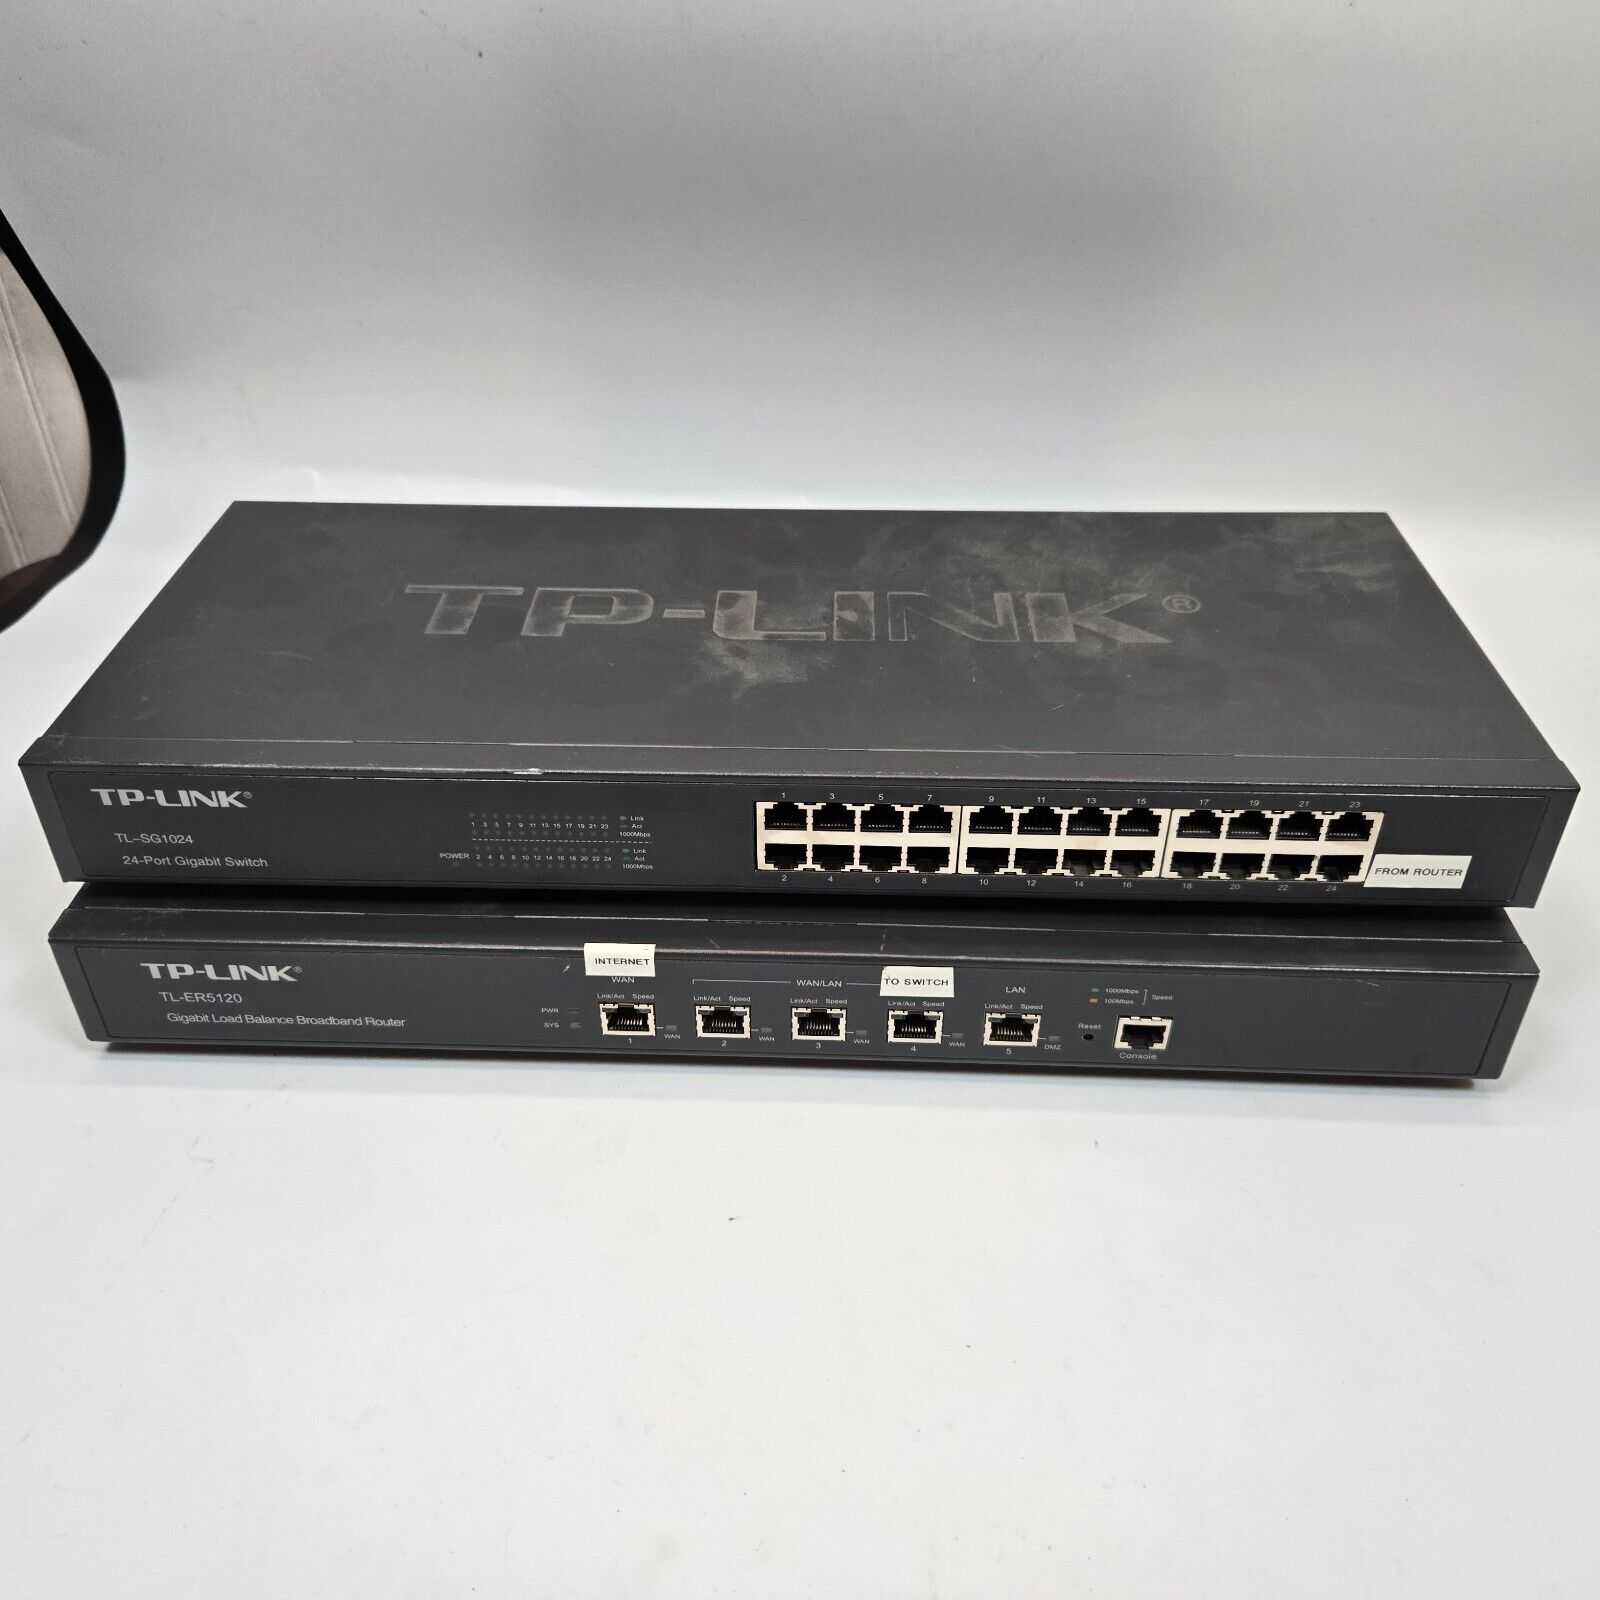 TP-Link TL-ER5120. Ver.2.1 Gigabit Load Balance Router w/ SG1024 gigabit switch